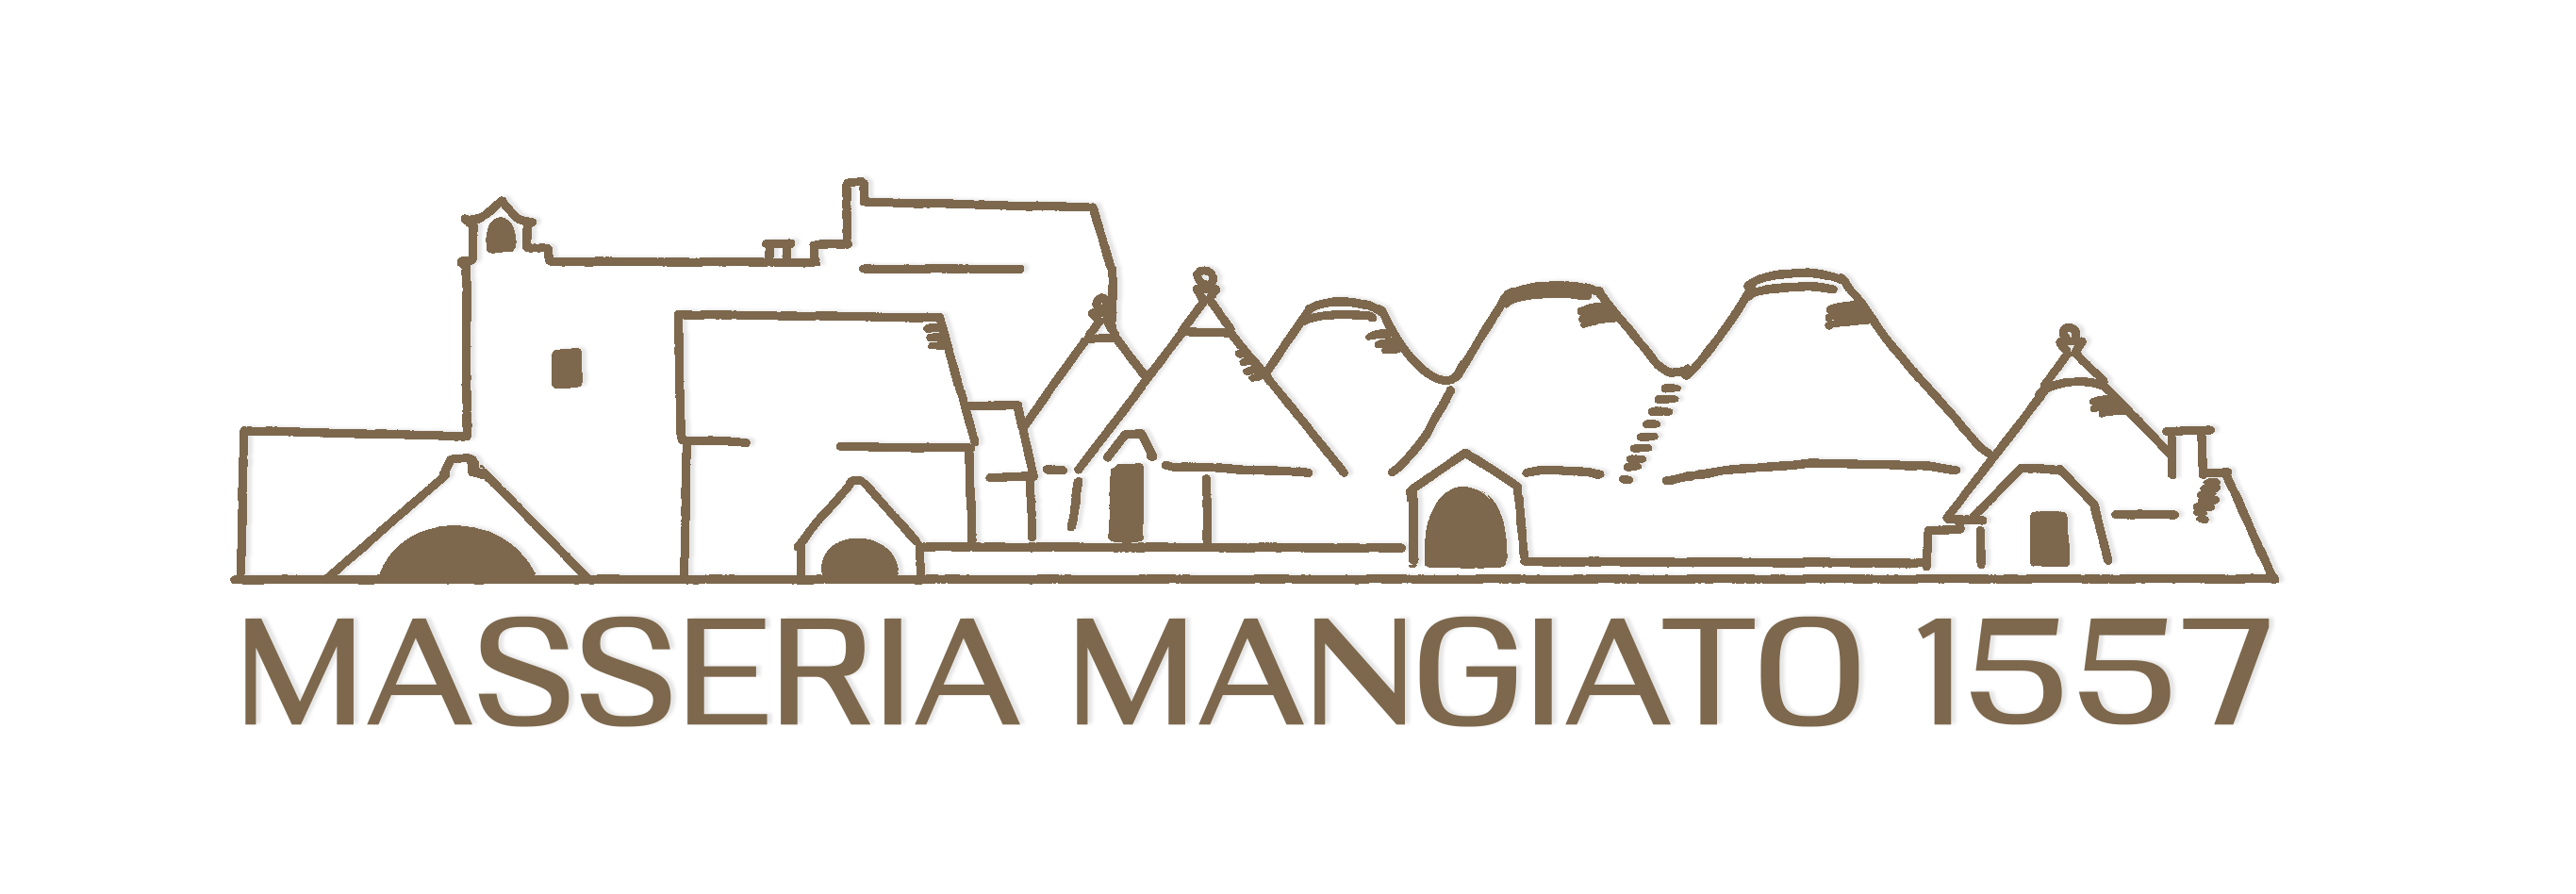 Masseria Mangiato 1557